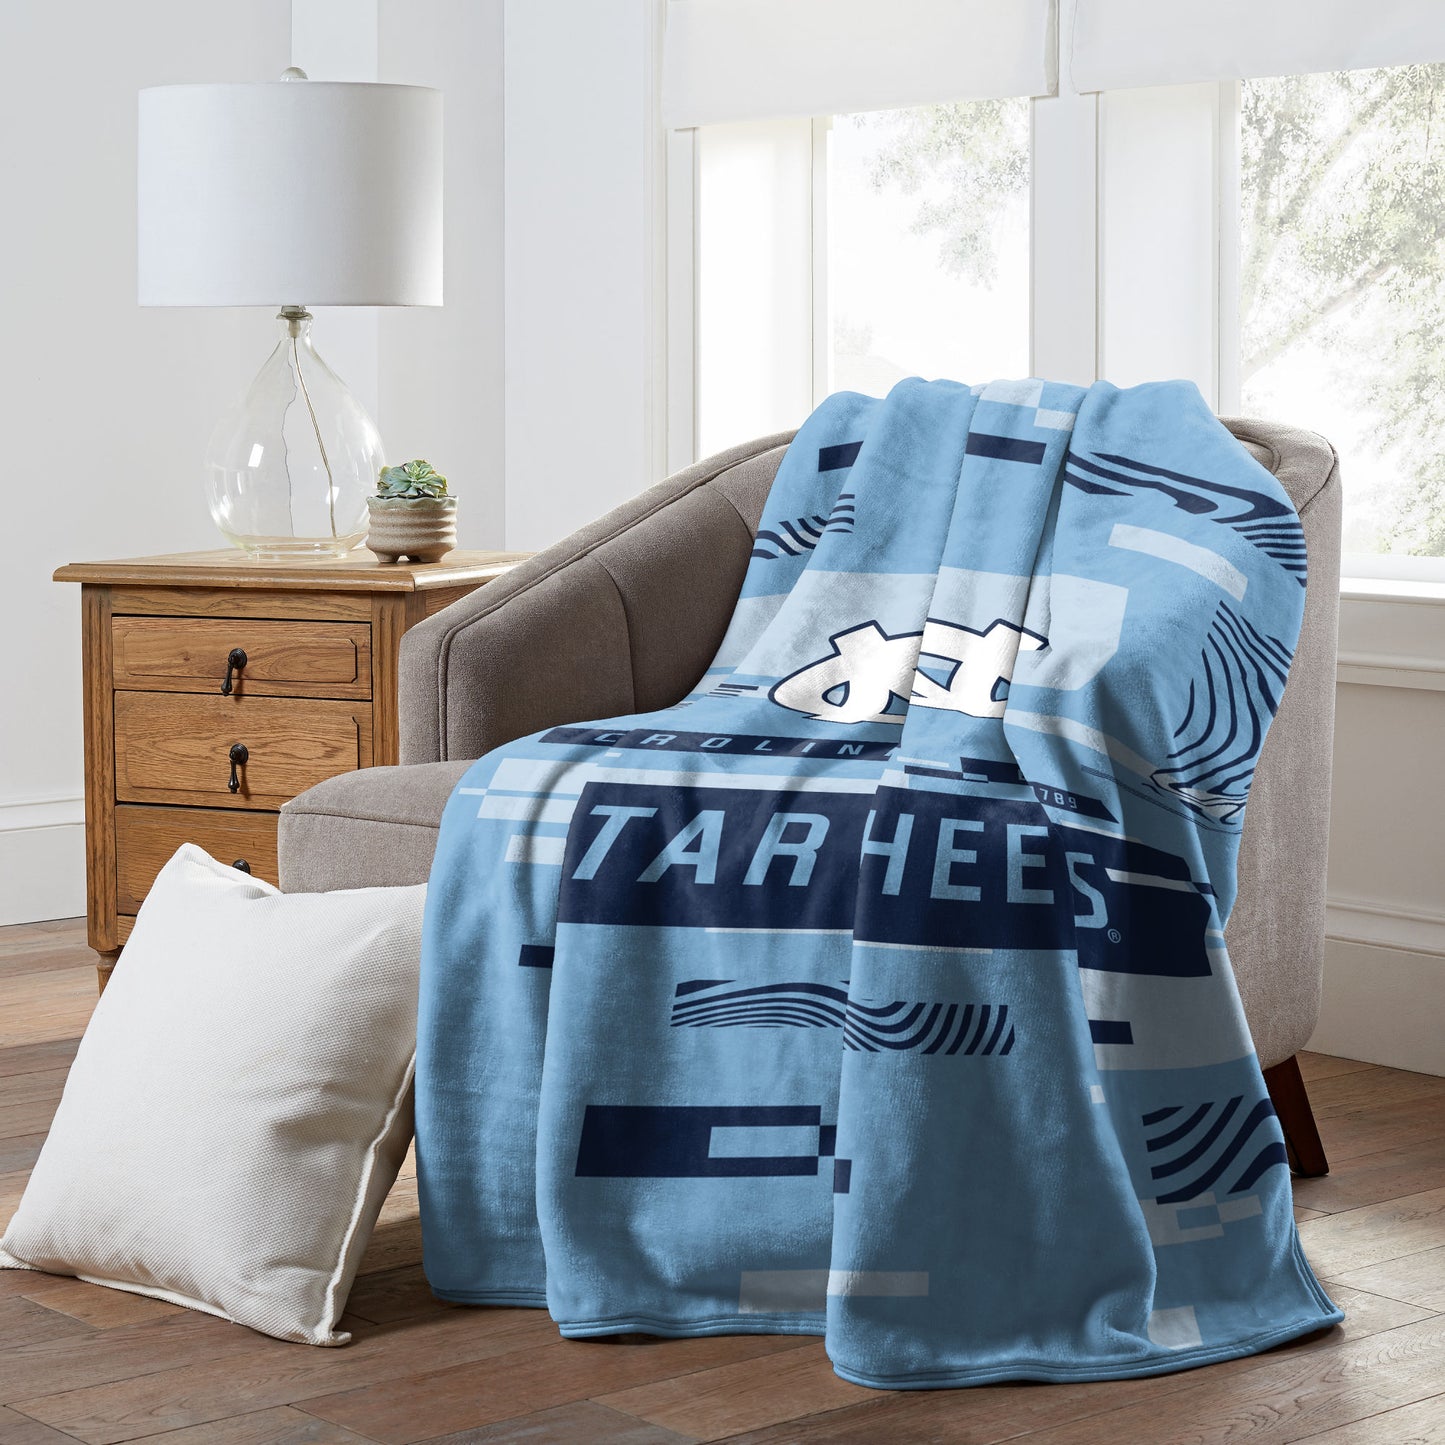 UNC OFFICIAL NCAA "Digitize" Raschel Throw Blanket, 60" x 80"